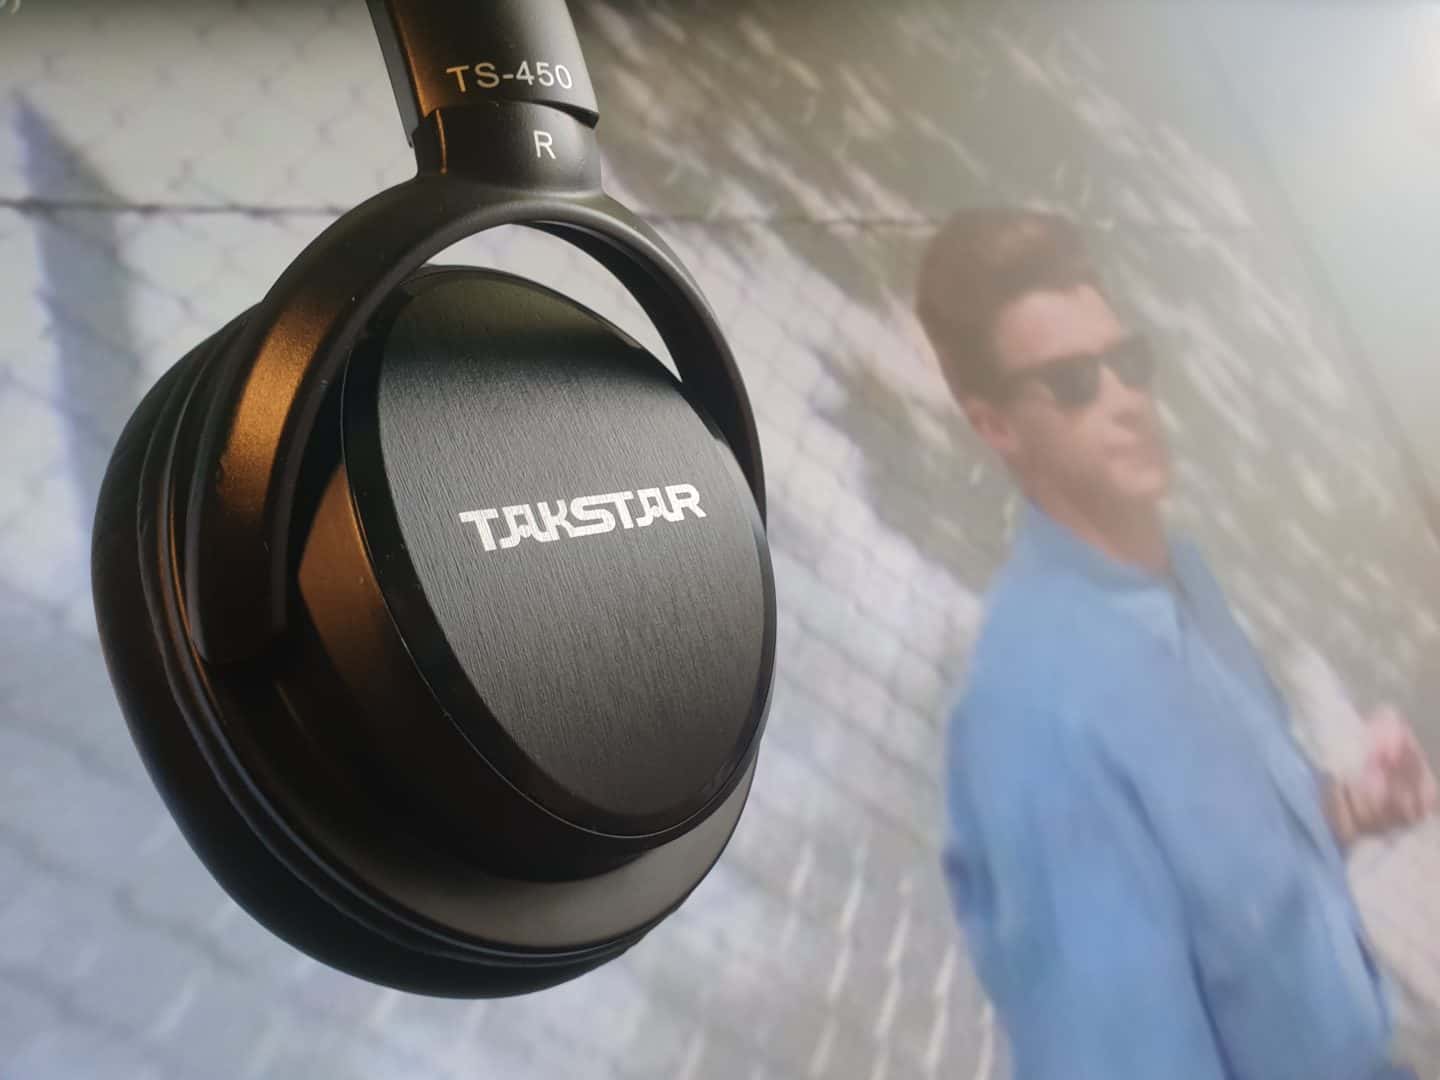 Tanie słuchawki, które zaskakują: Takstar TS-450